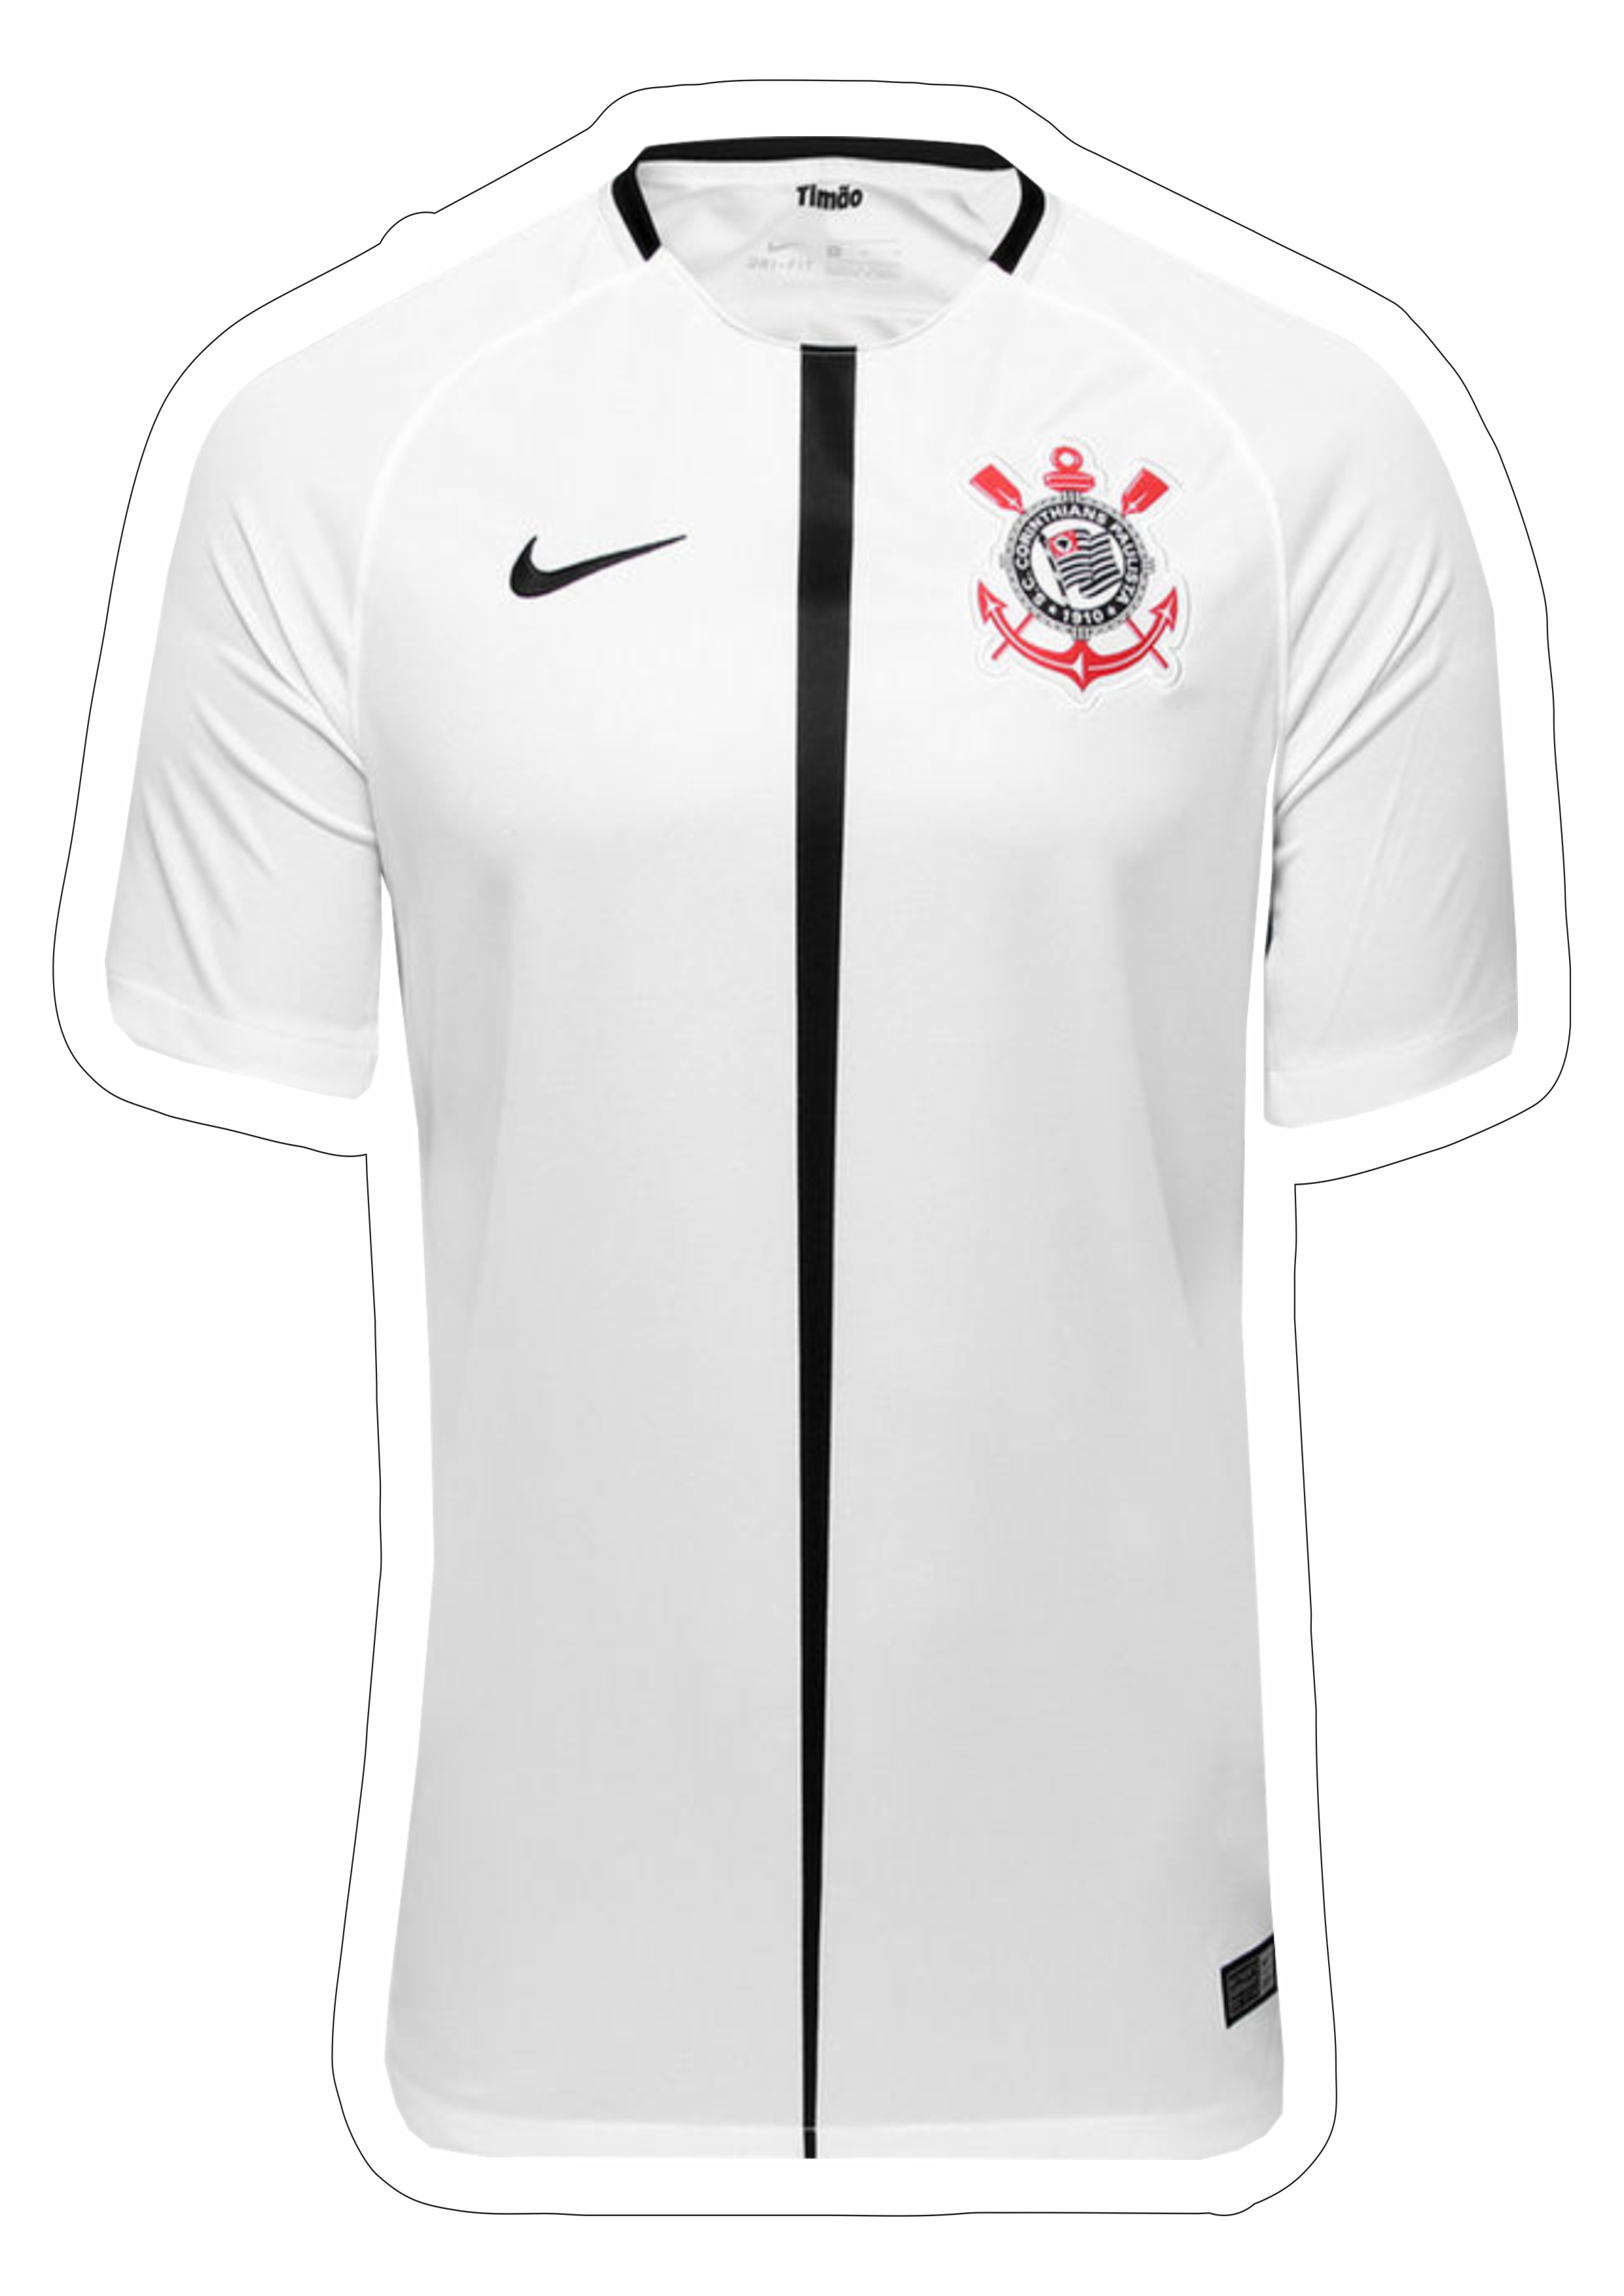 Corinthians camiseta branca vetor torcida campeonato brasileiro ilustração futebol série A paulista uniforme png